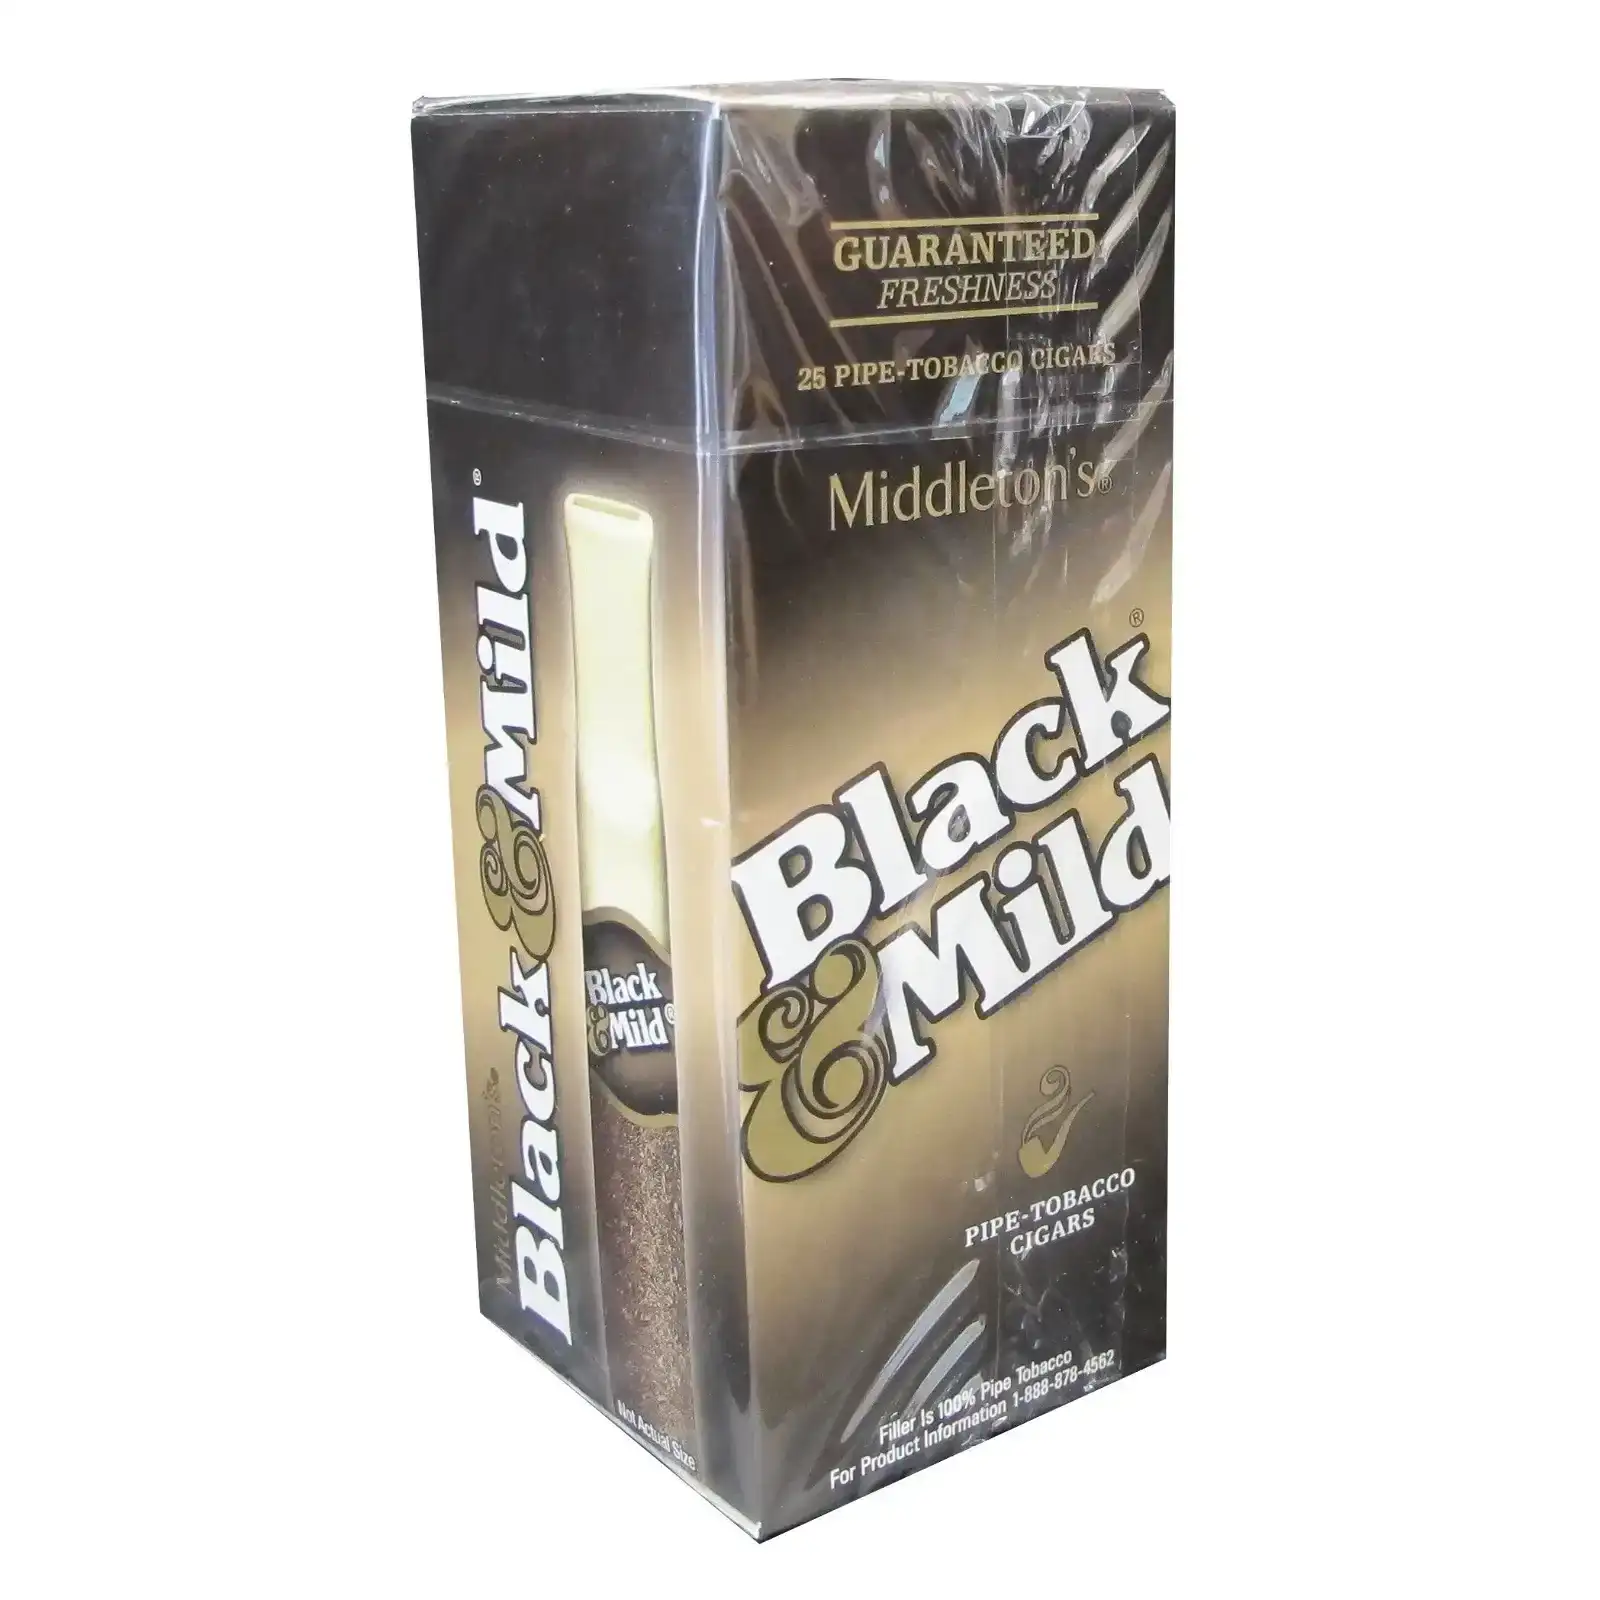 Black & Mild Regular Cigars